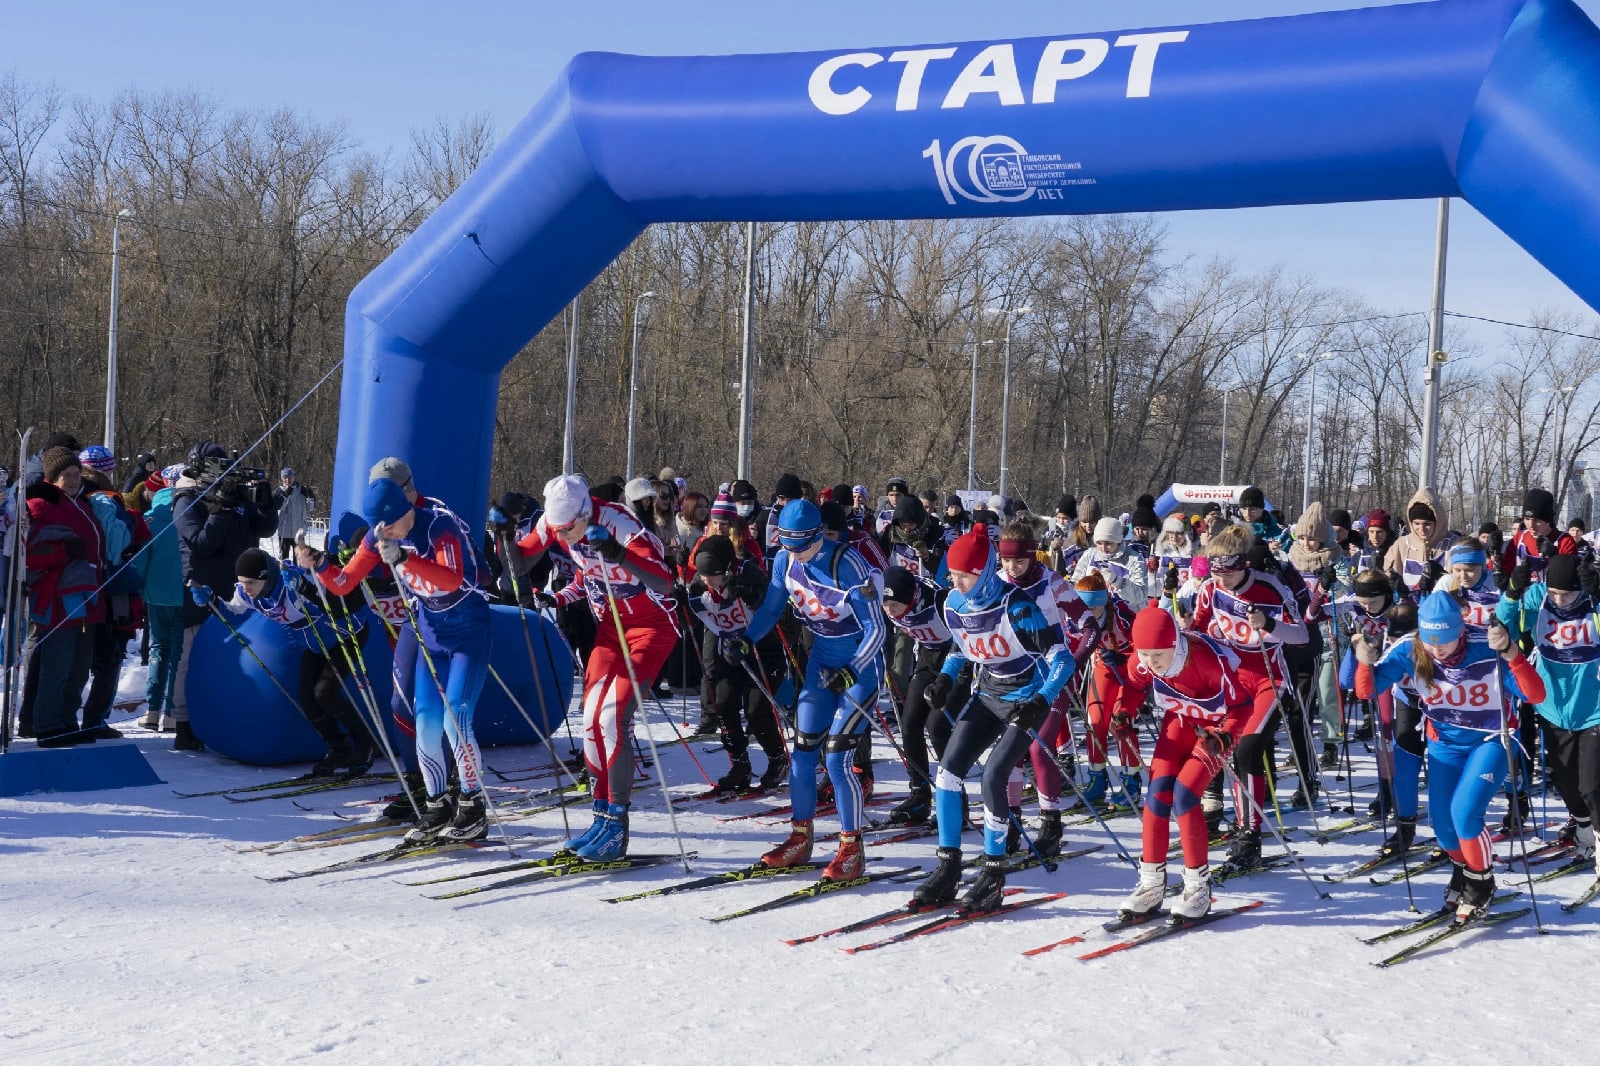 Державинская лыжня в пятый раз объединила спортсменов со всей страны фото анонса